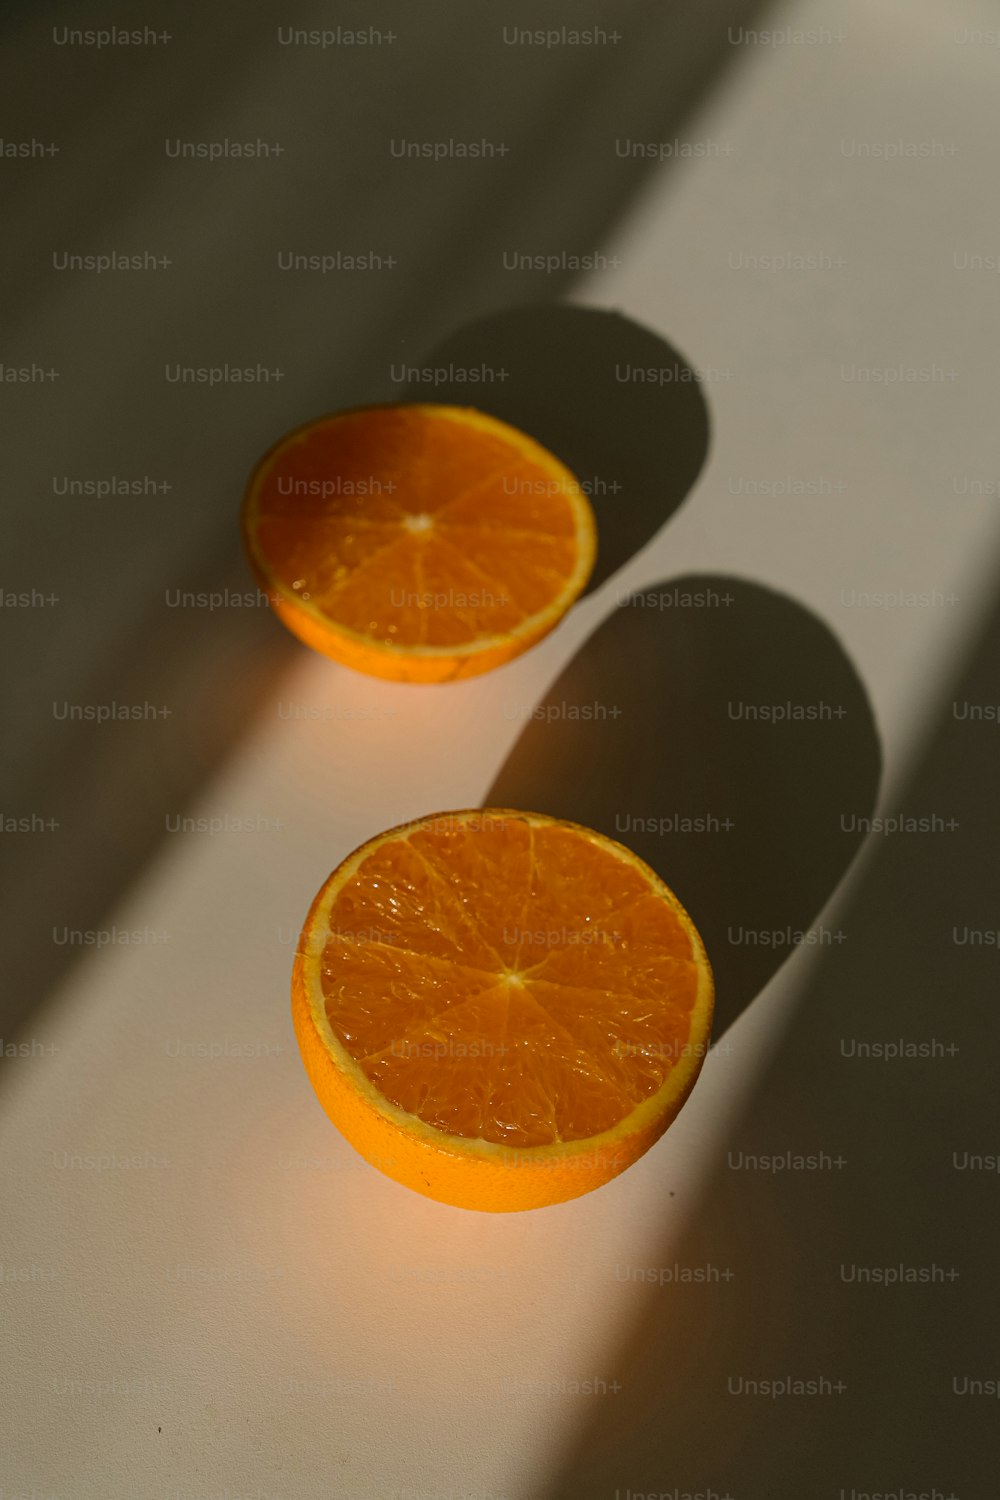 deux moitiés d’orange assises sur une table